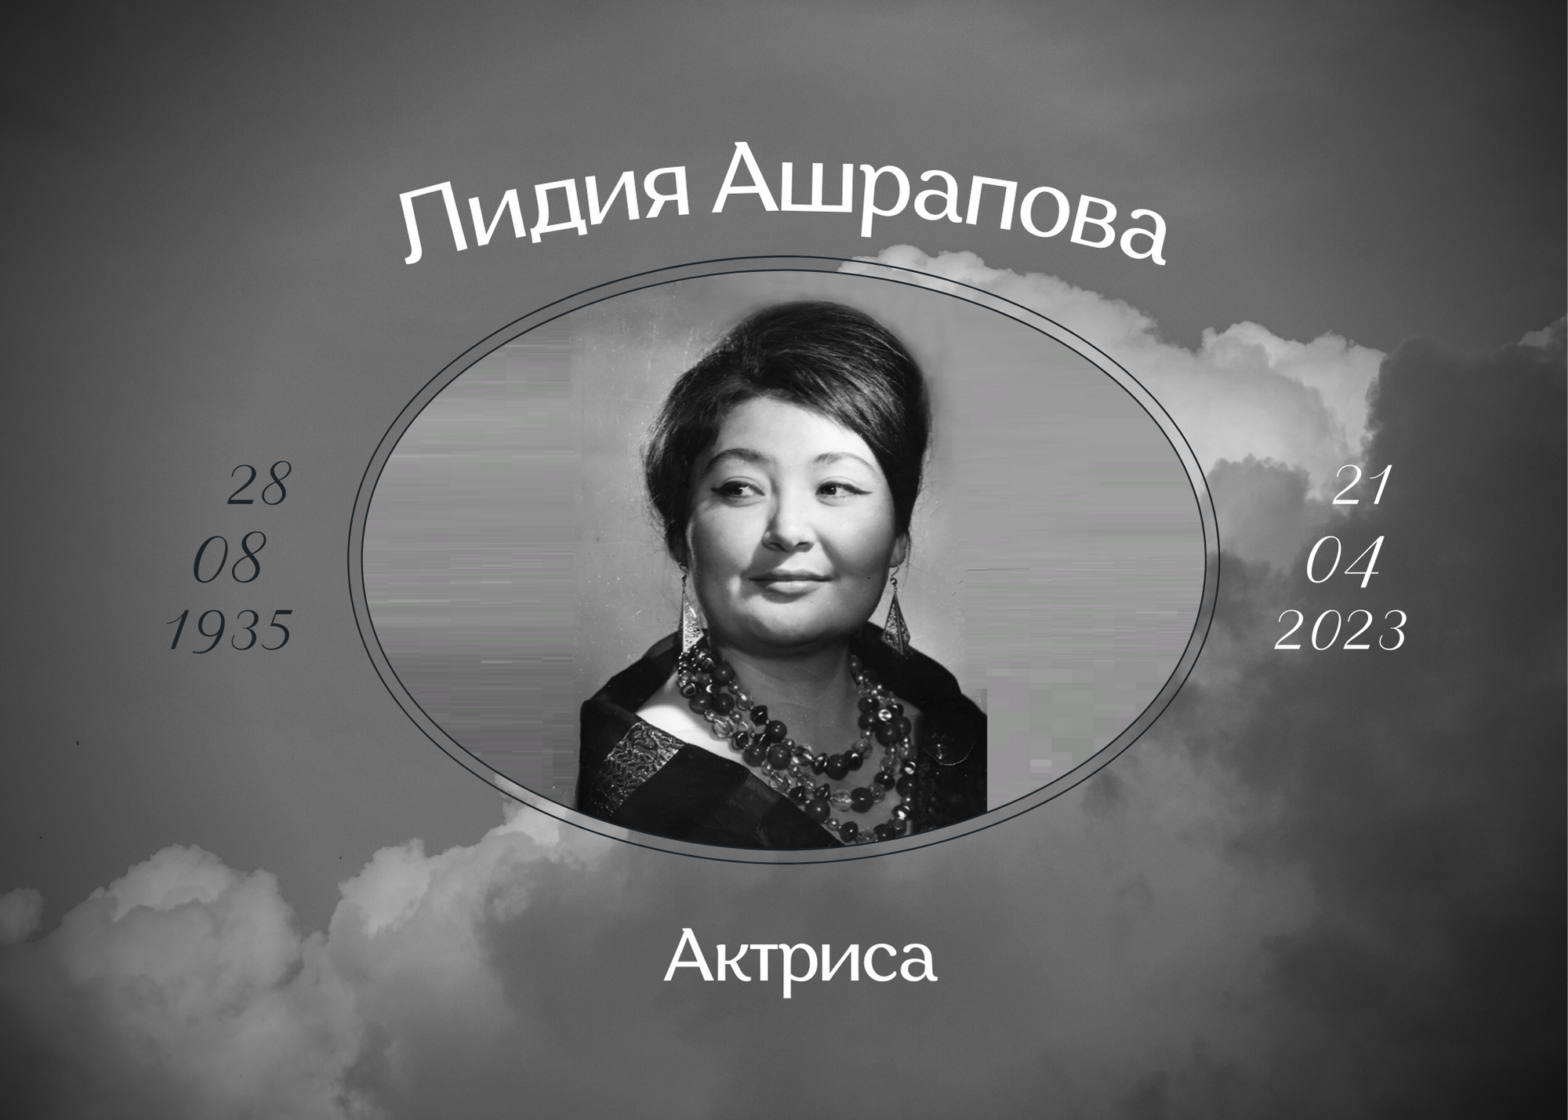 Умерла советская актриса Лидия Ашрапова